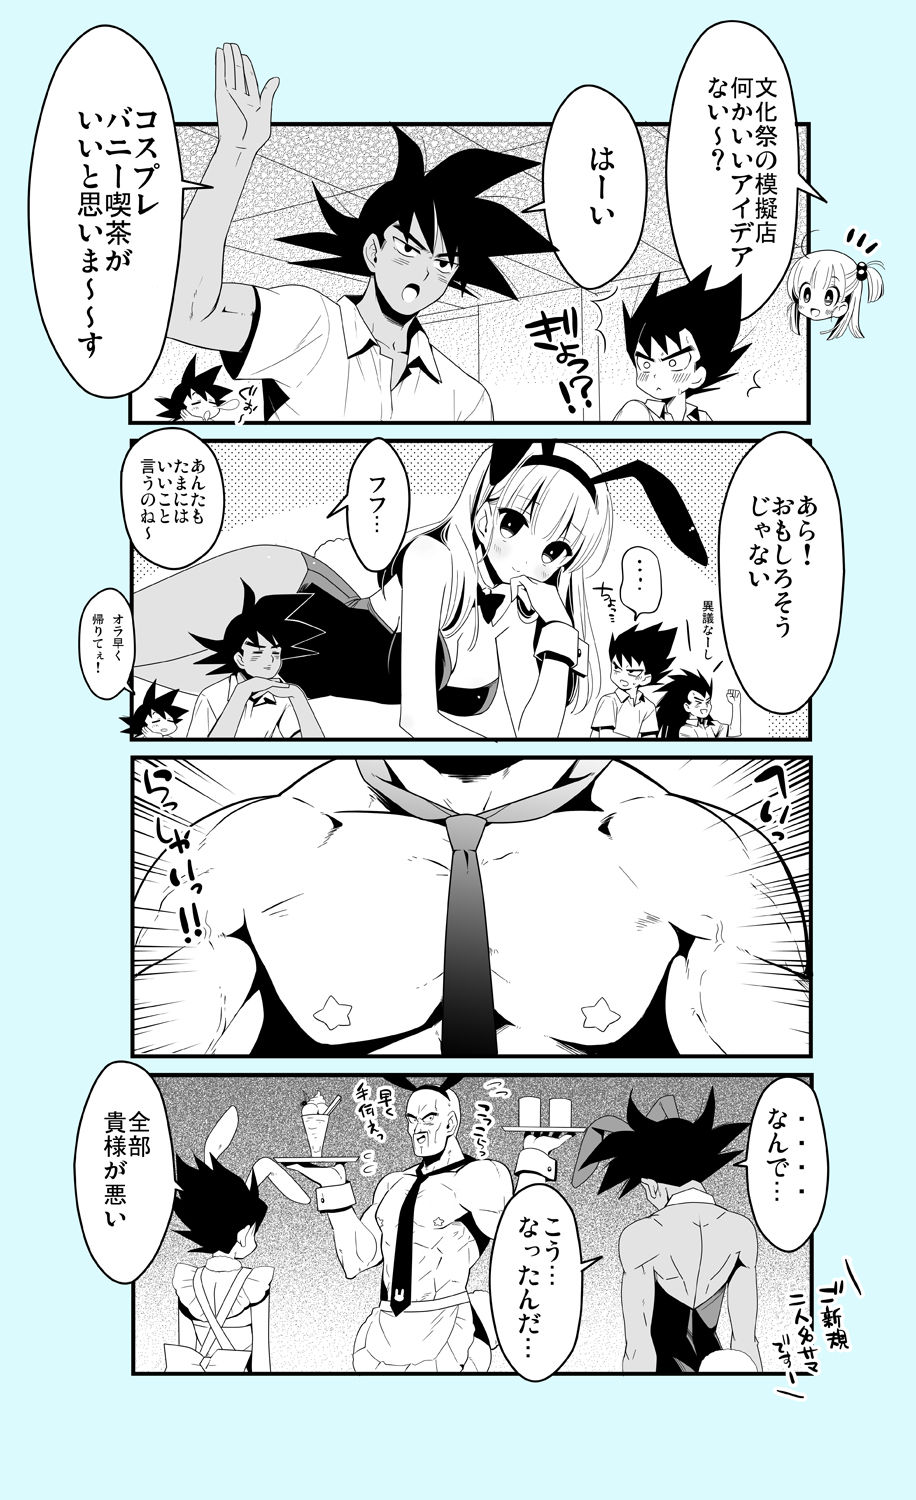 [BERRY BAGEL (Kanekiyo Miwa)] Gakuparo (Dragon Ball Z) page 4 full